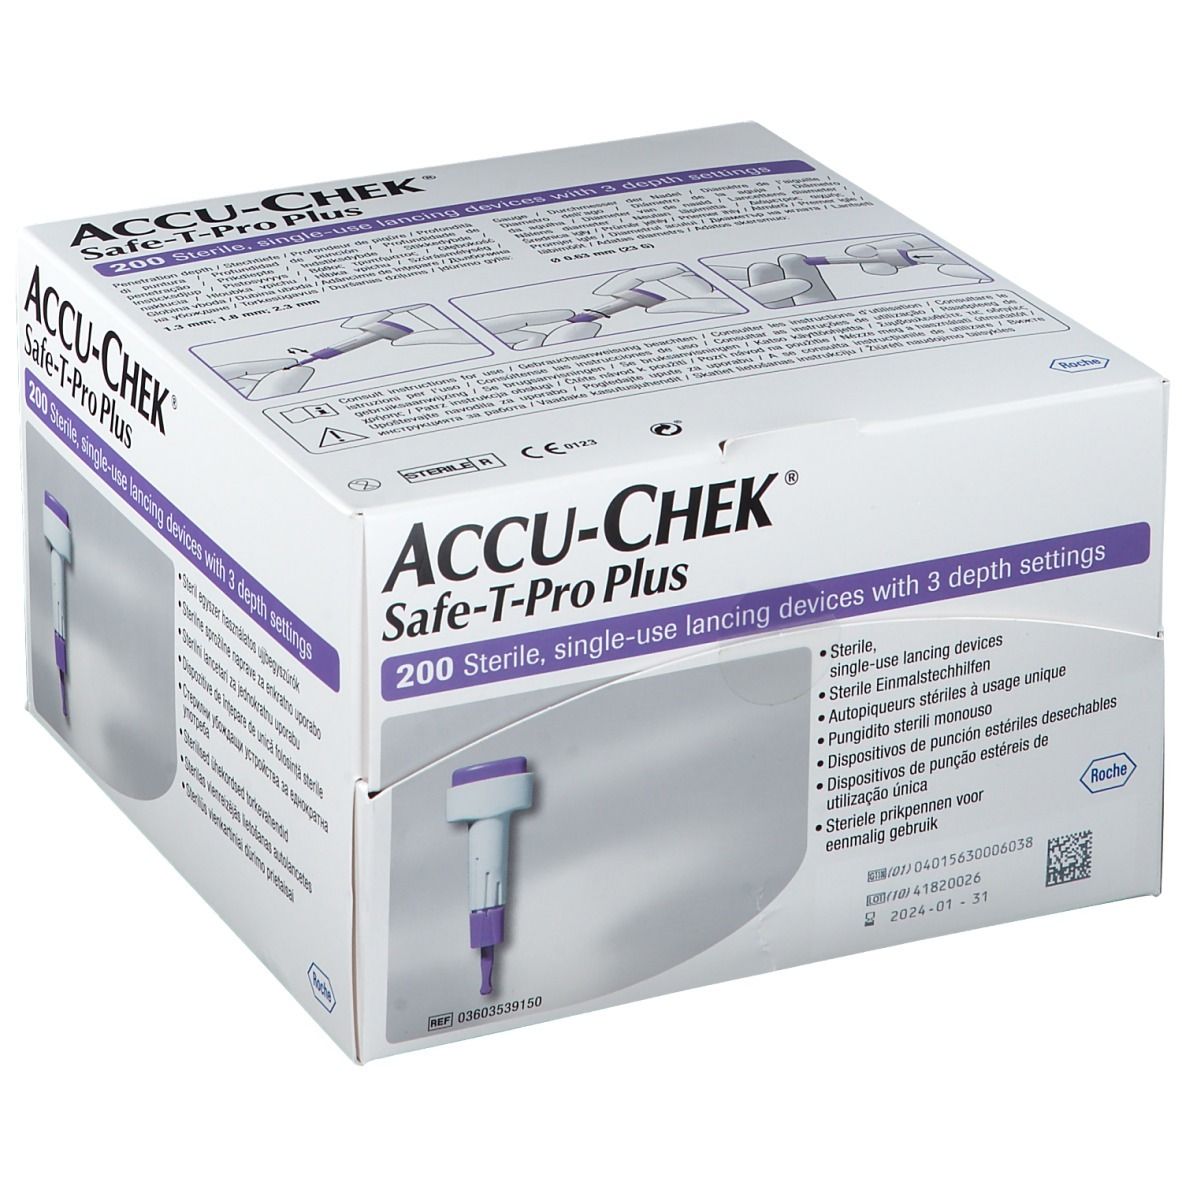 ACCU-CHEK® Safe-T-Pro Plus